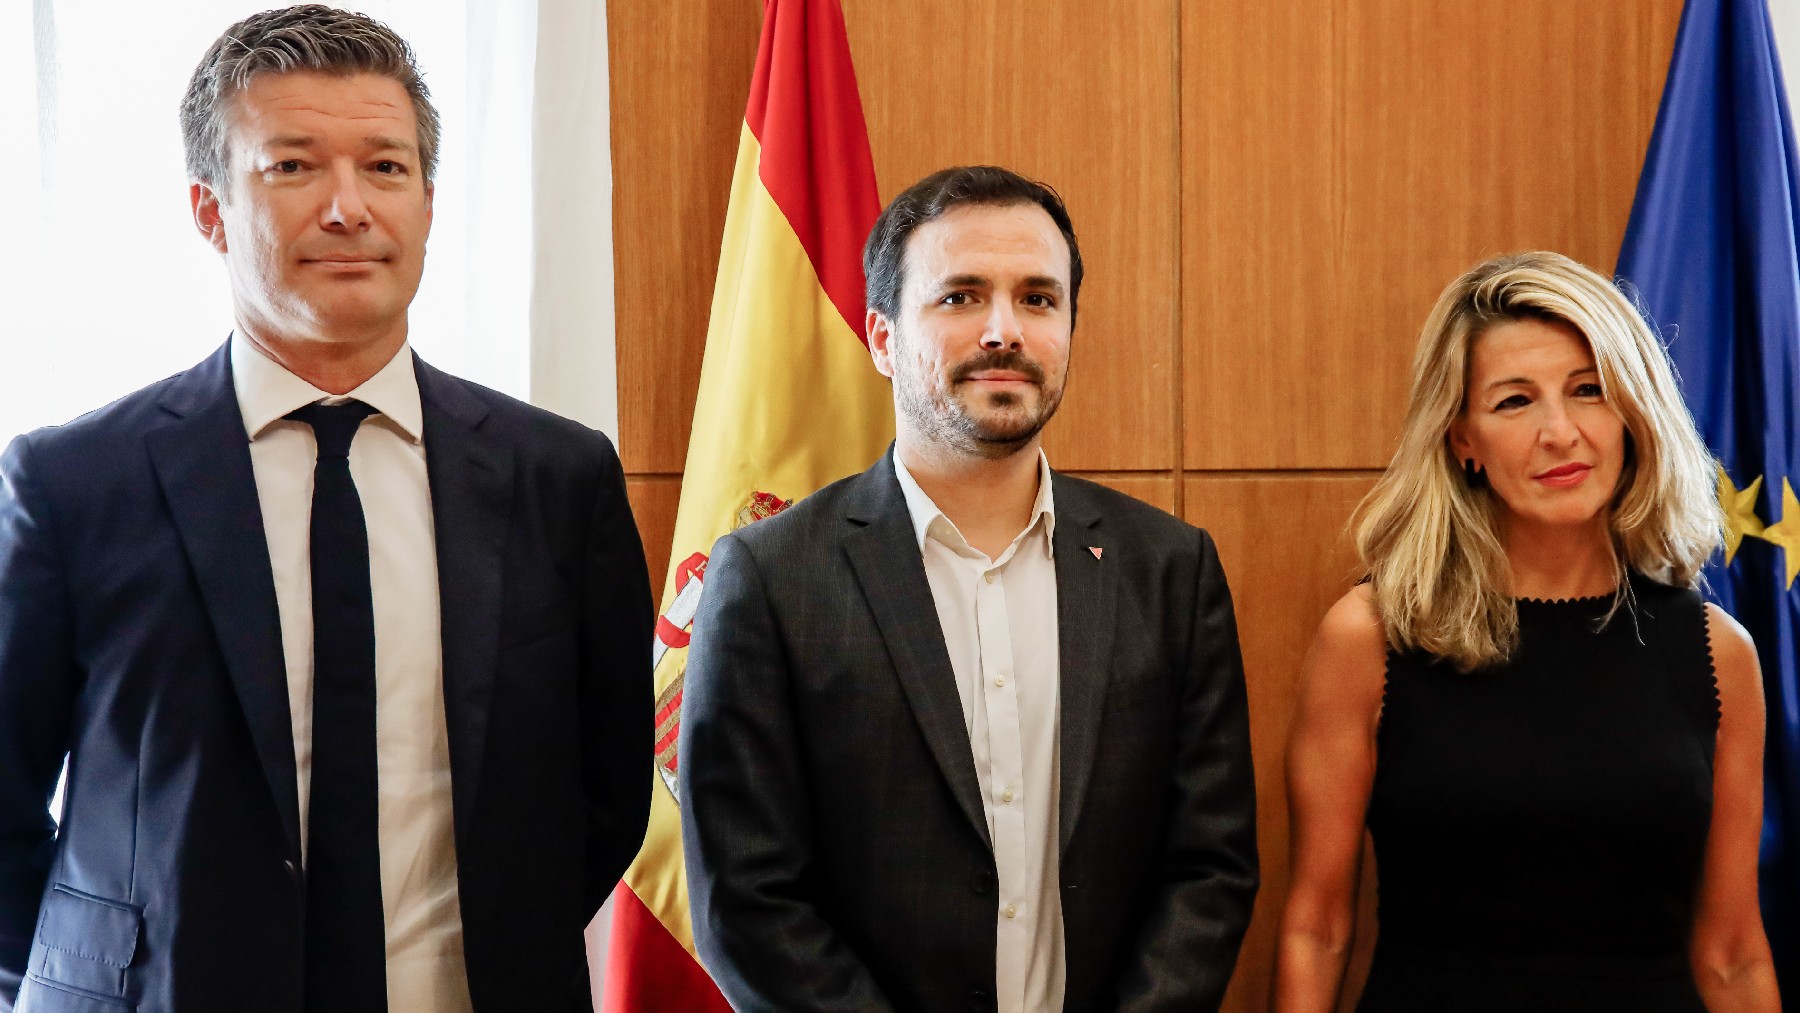 se ha reunido hoy a solas el CEO de Carrefour con los ministros comunistas Díaz y Garzón